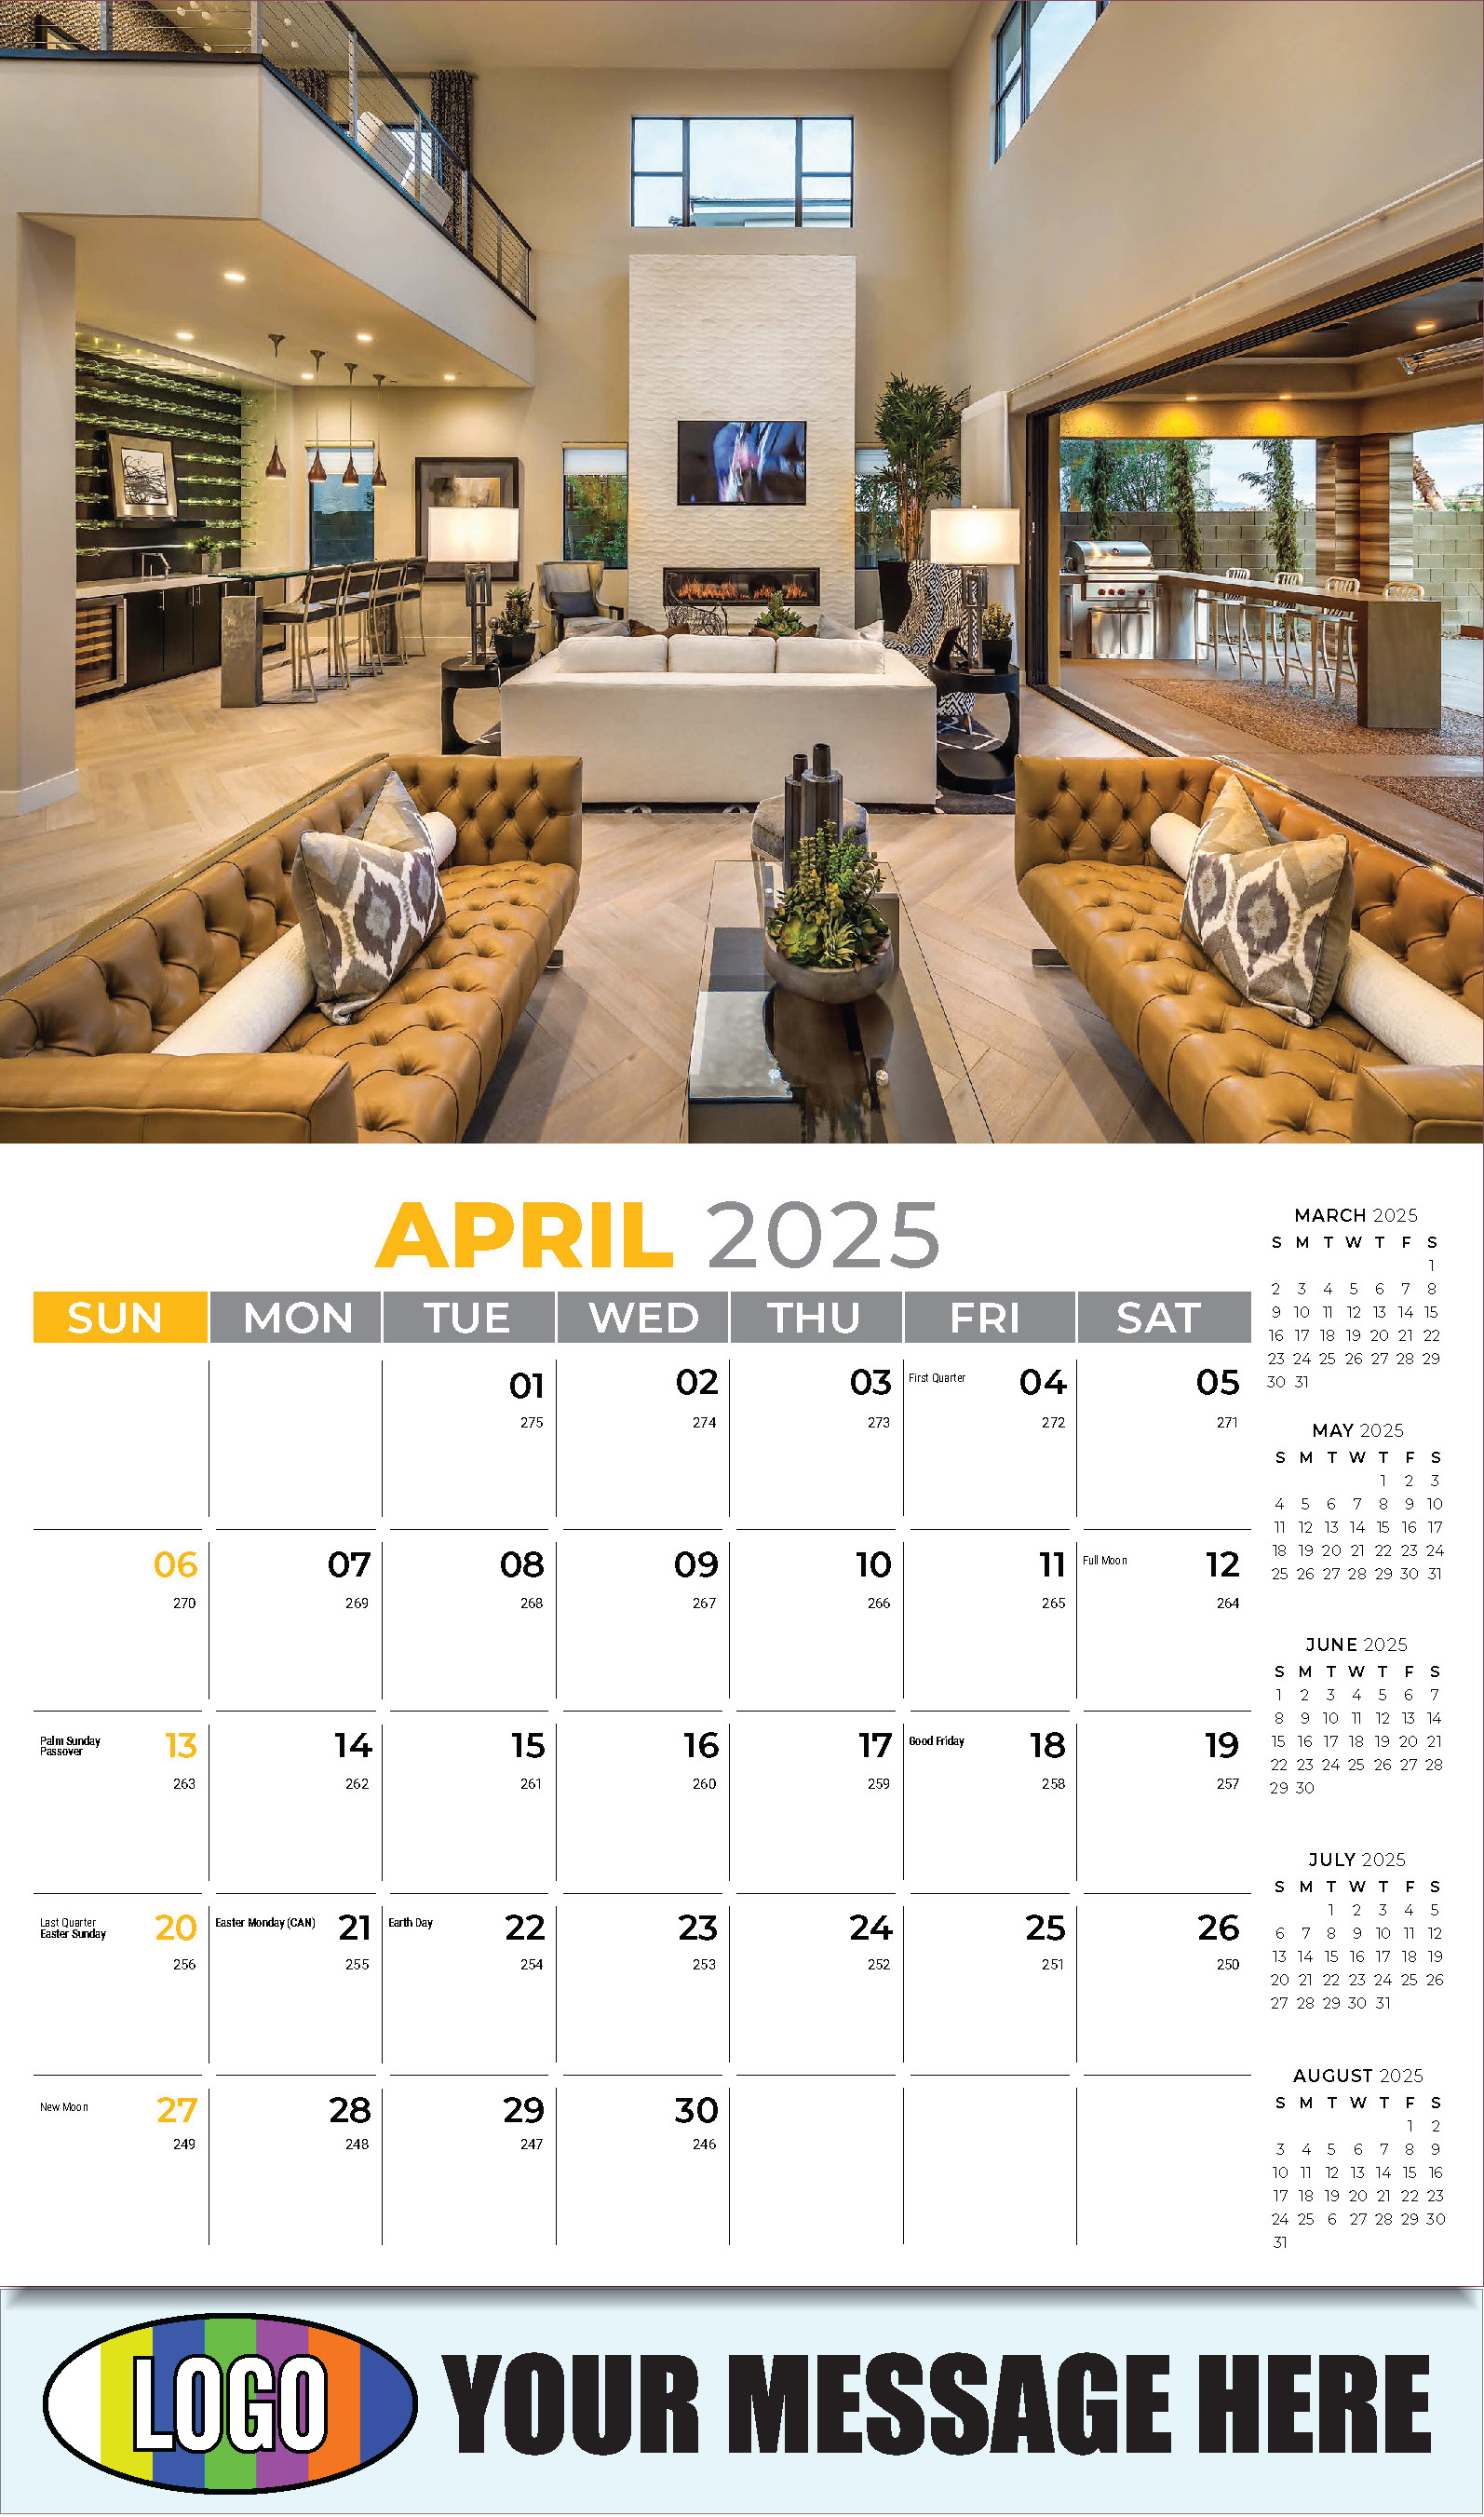 Decor and Design 2025 Interior Design Business Promotional Calendar - April